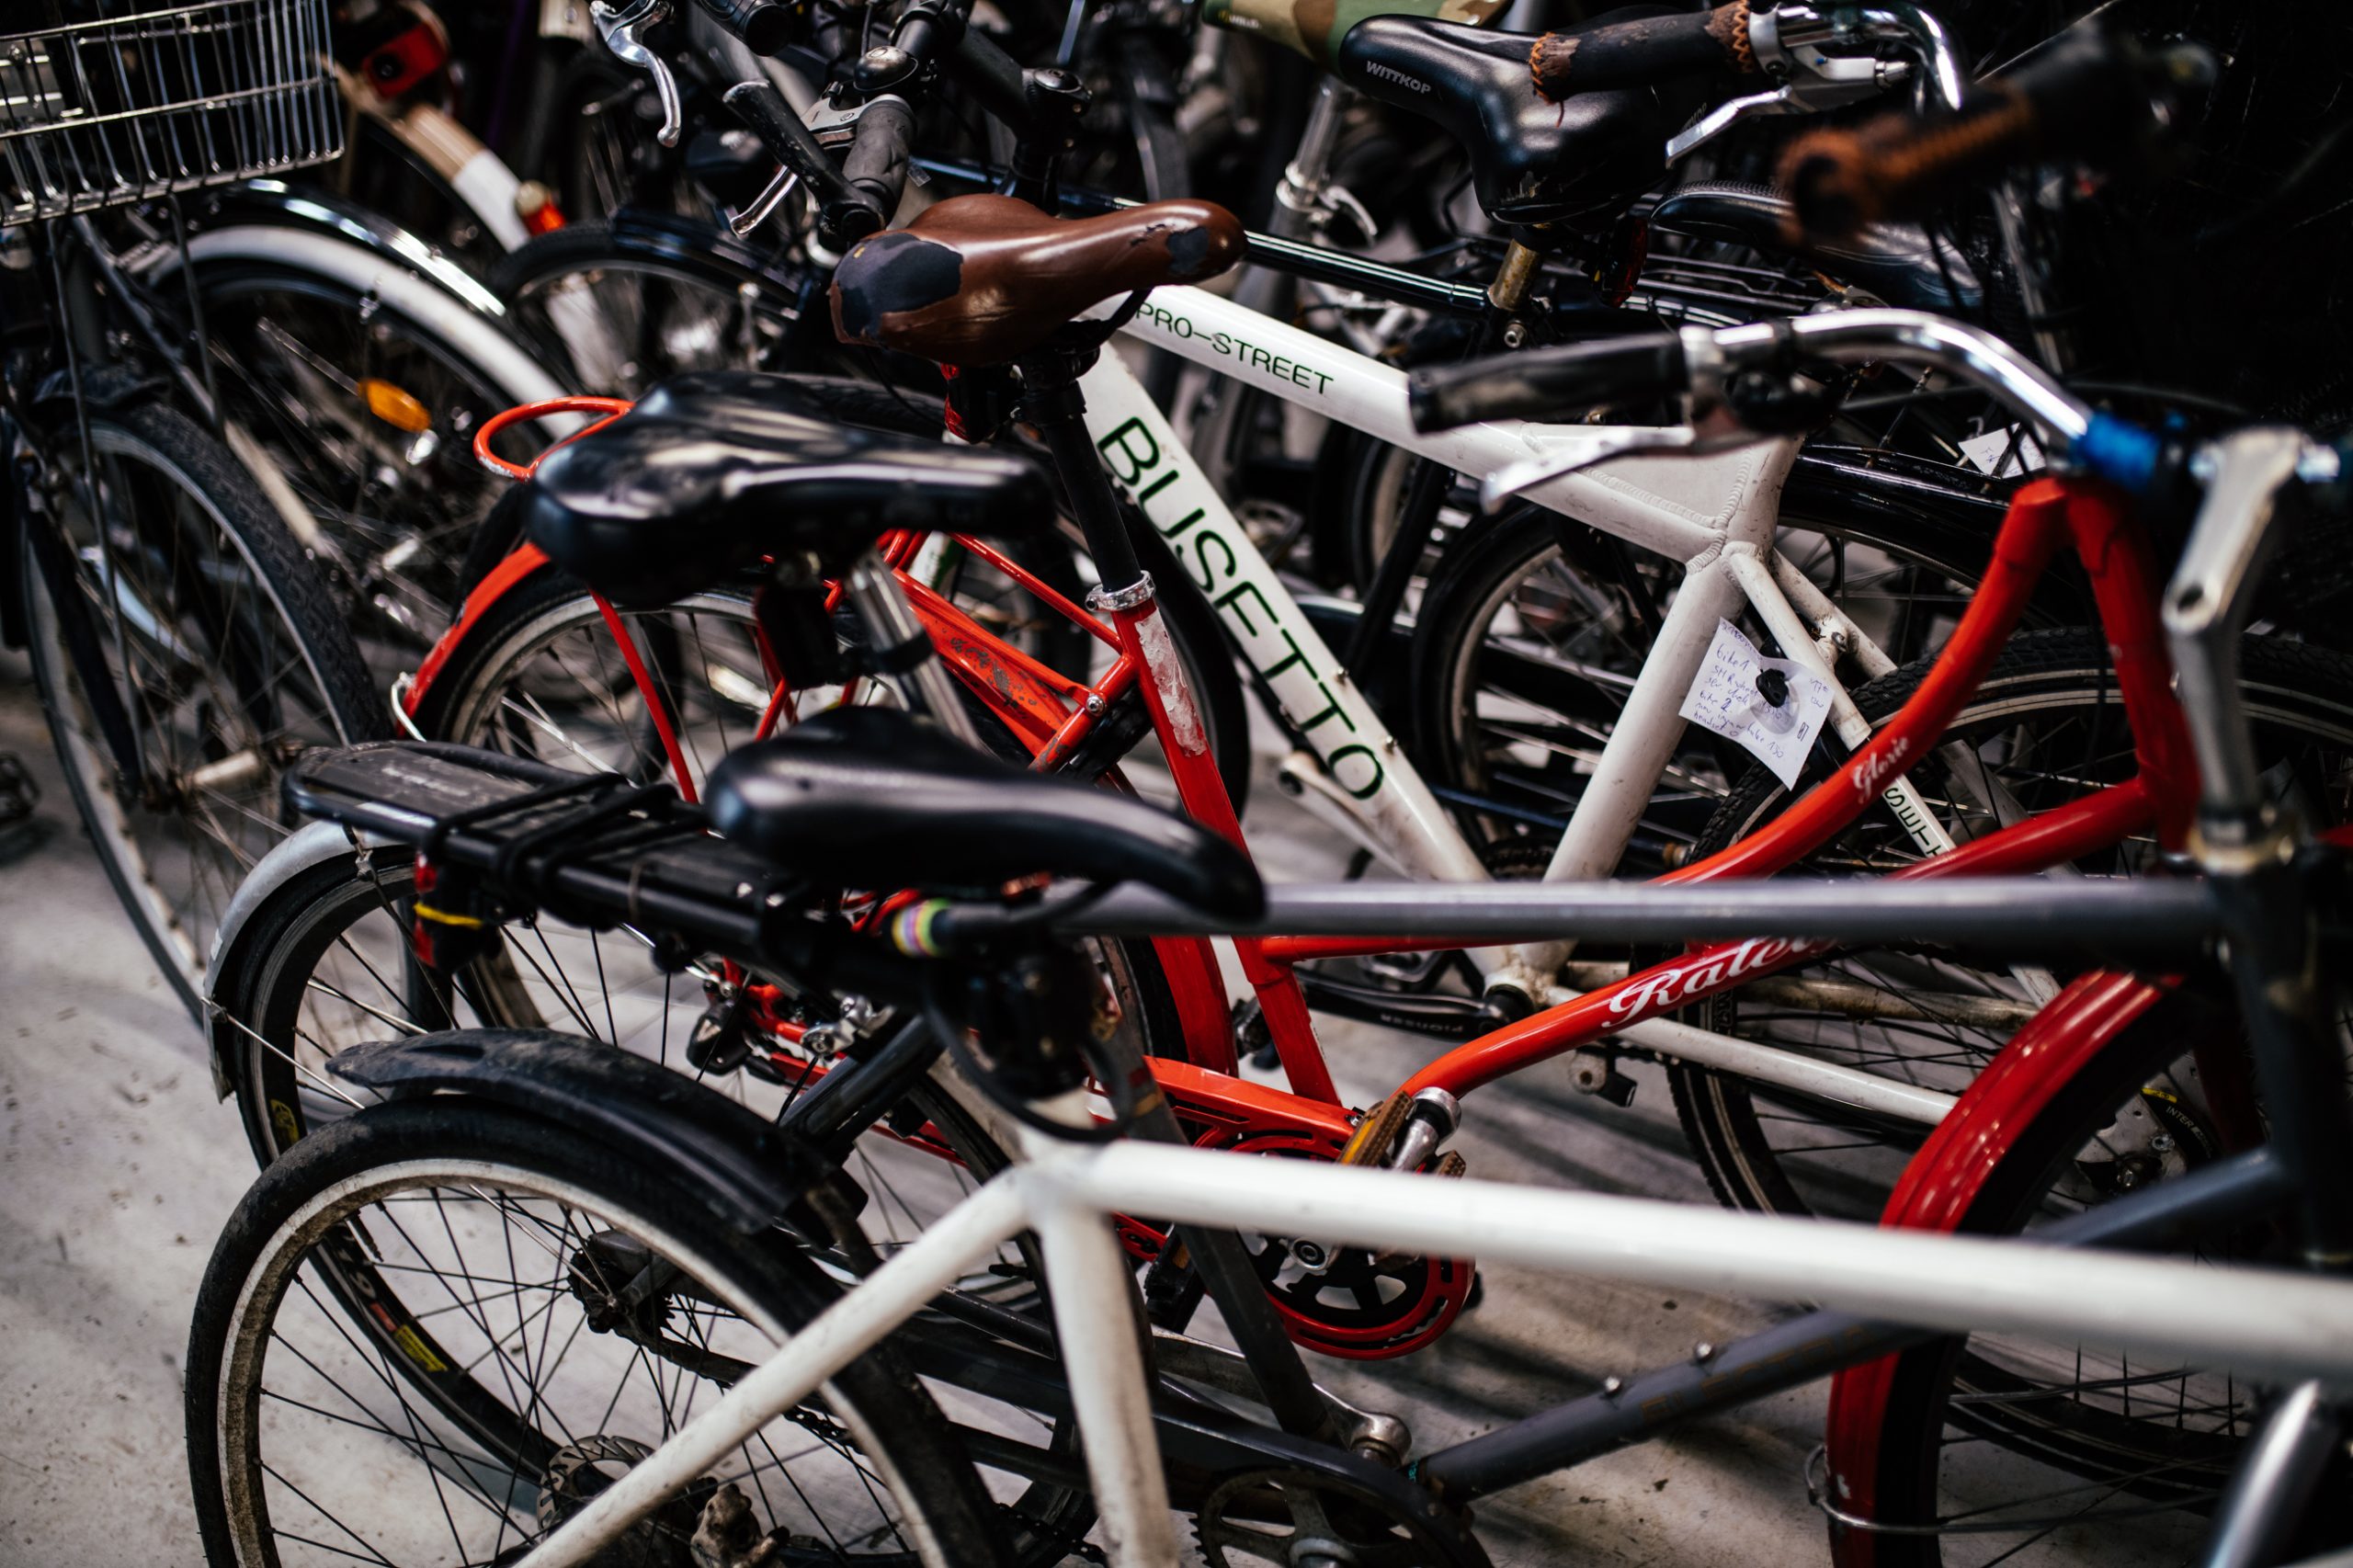 KGS HAVE CYKLER | Cykeludlejning i København – stort udvalg til fair priser